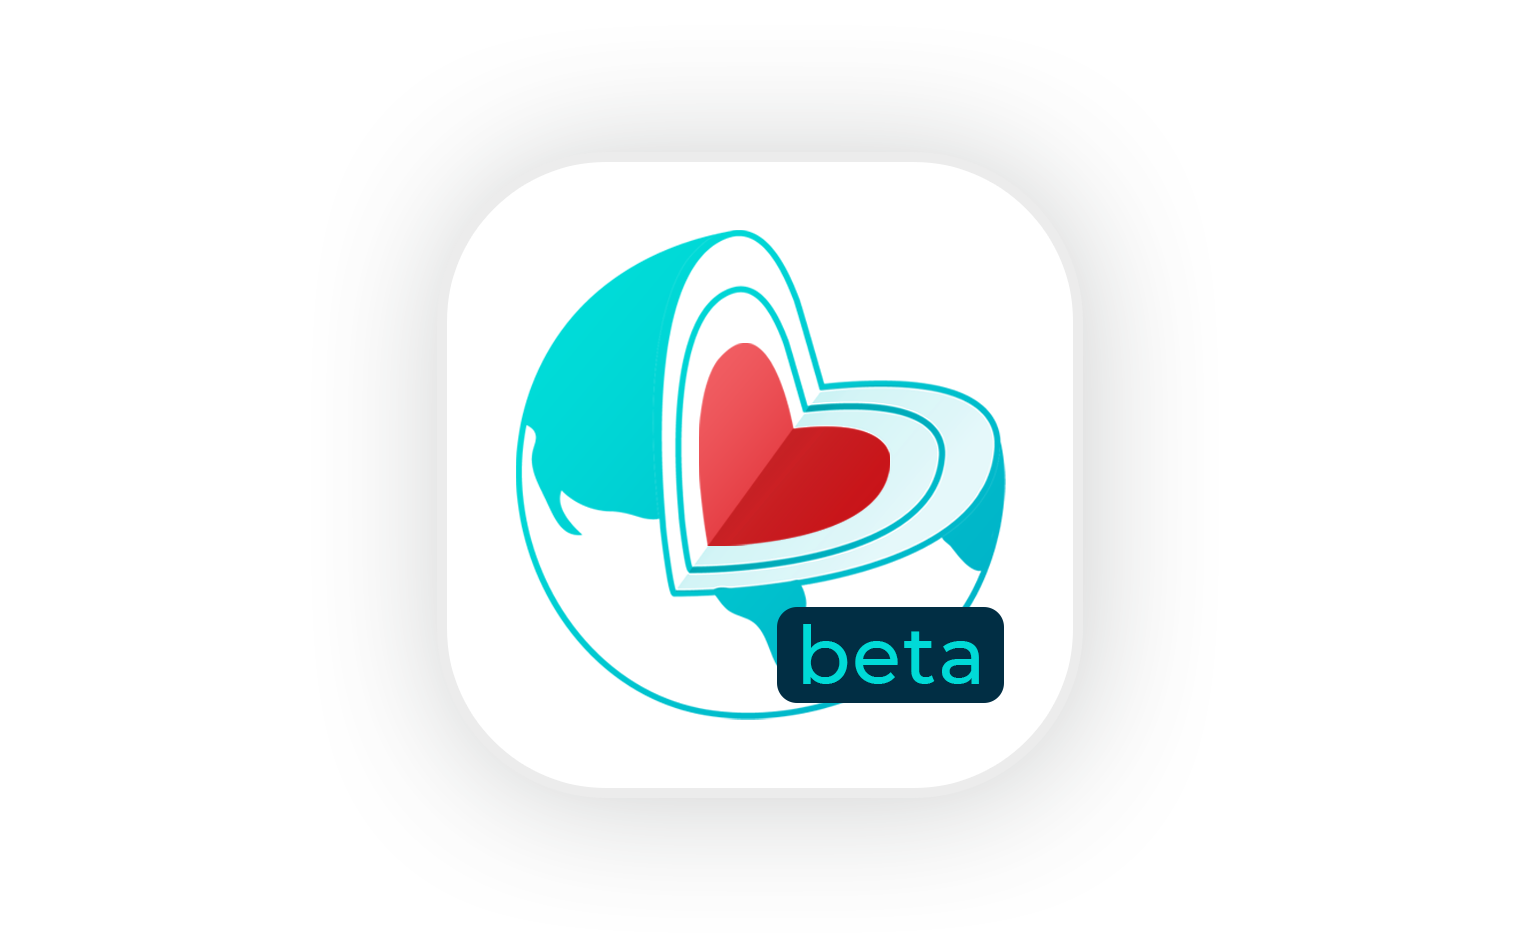 earthly beta logo